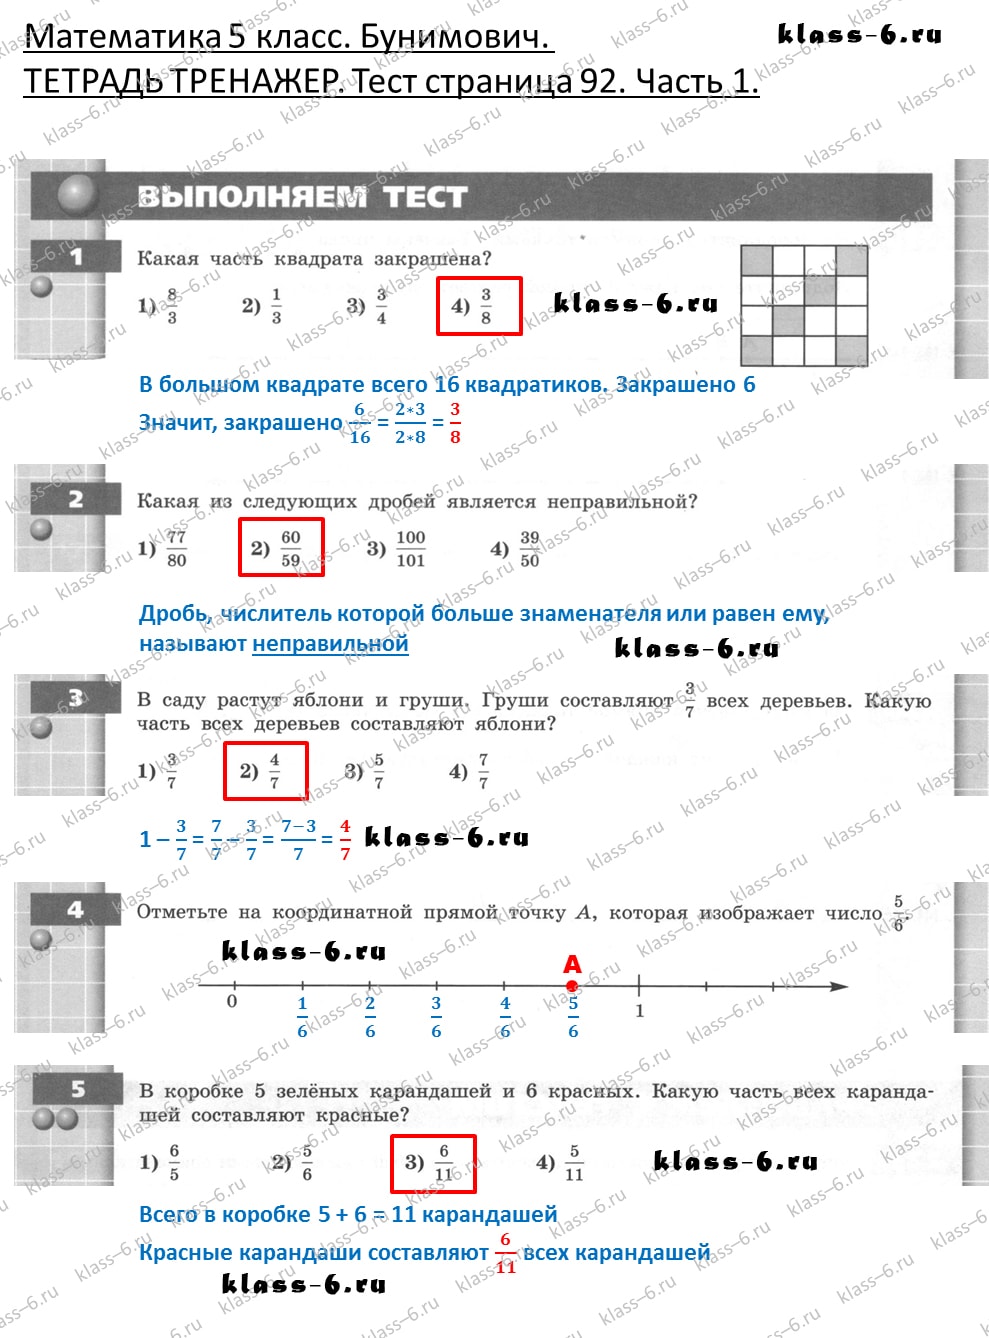 решебник и гдз по математике тетрадь тренажер Бунимович 5 класс тесты страница 92 (1)